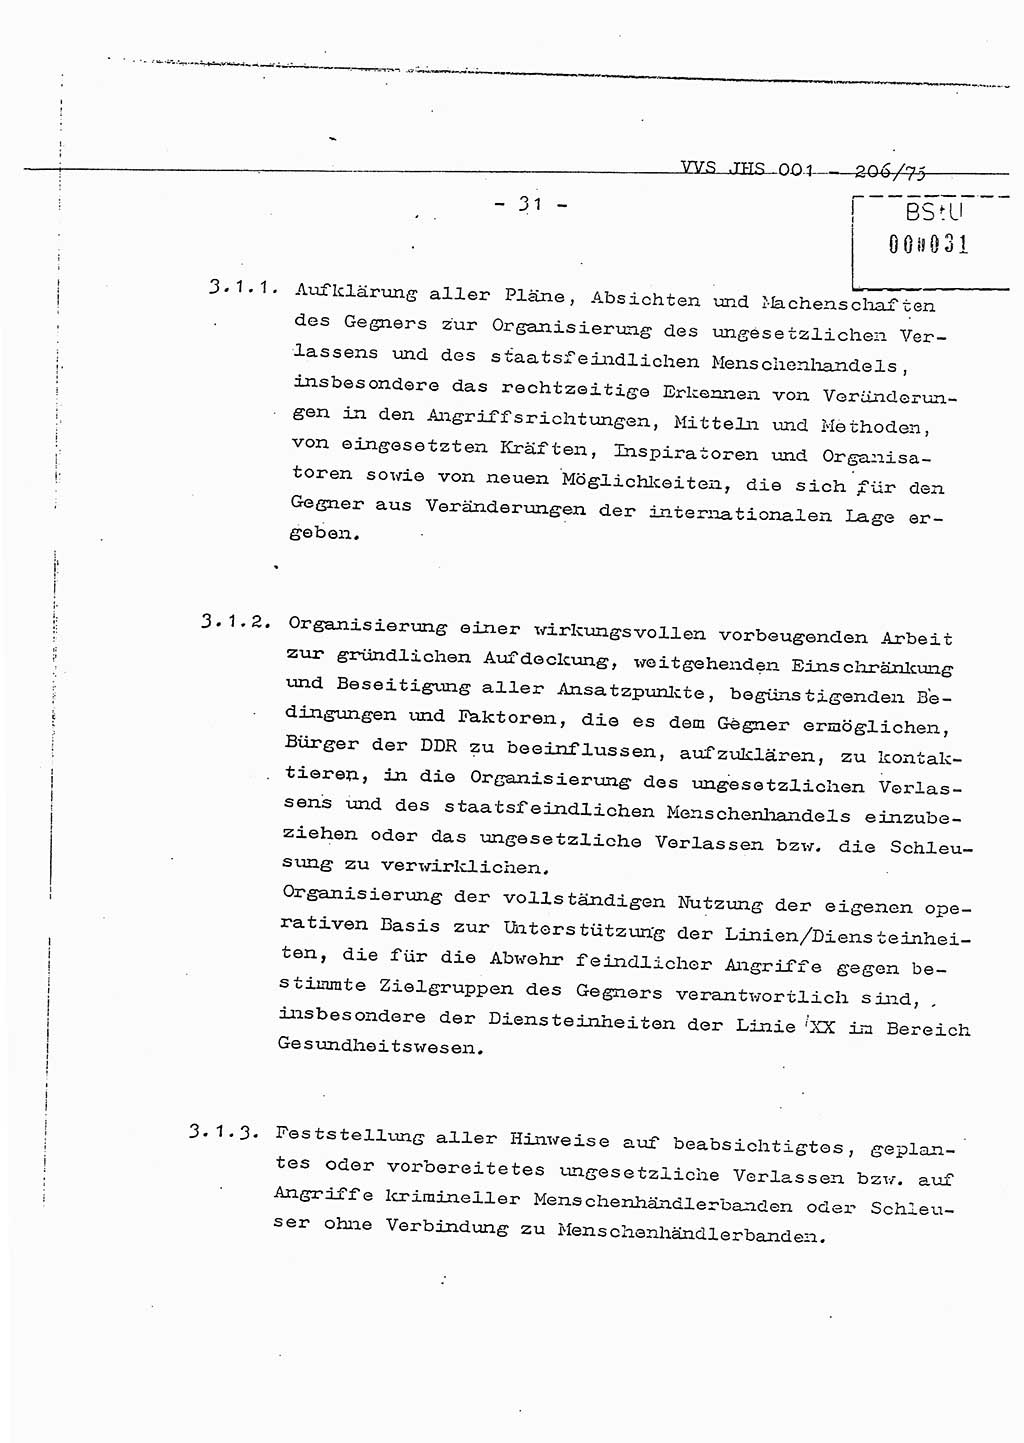 Dissertation Generalmajor Manfred Hummitzsch (Leiter der BV Leipzig), Generalmajor Heinz Fiedler (HA Ⅵ), Oberst Rolf Fister (HA Ⅸ), Ministerium für Staatssicherheit (MfS) [Deutsche Demokratische Republik (DDR)], Juristische Hochschule (JHS), Vertrauliche Verschlußsache (VVS) 001-206/75, Potsdam 1975, Seite 31 (Diss. MfS DDR JHS VVS 001-206/75 1975, S. 31)